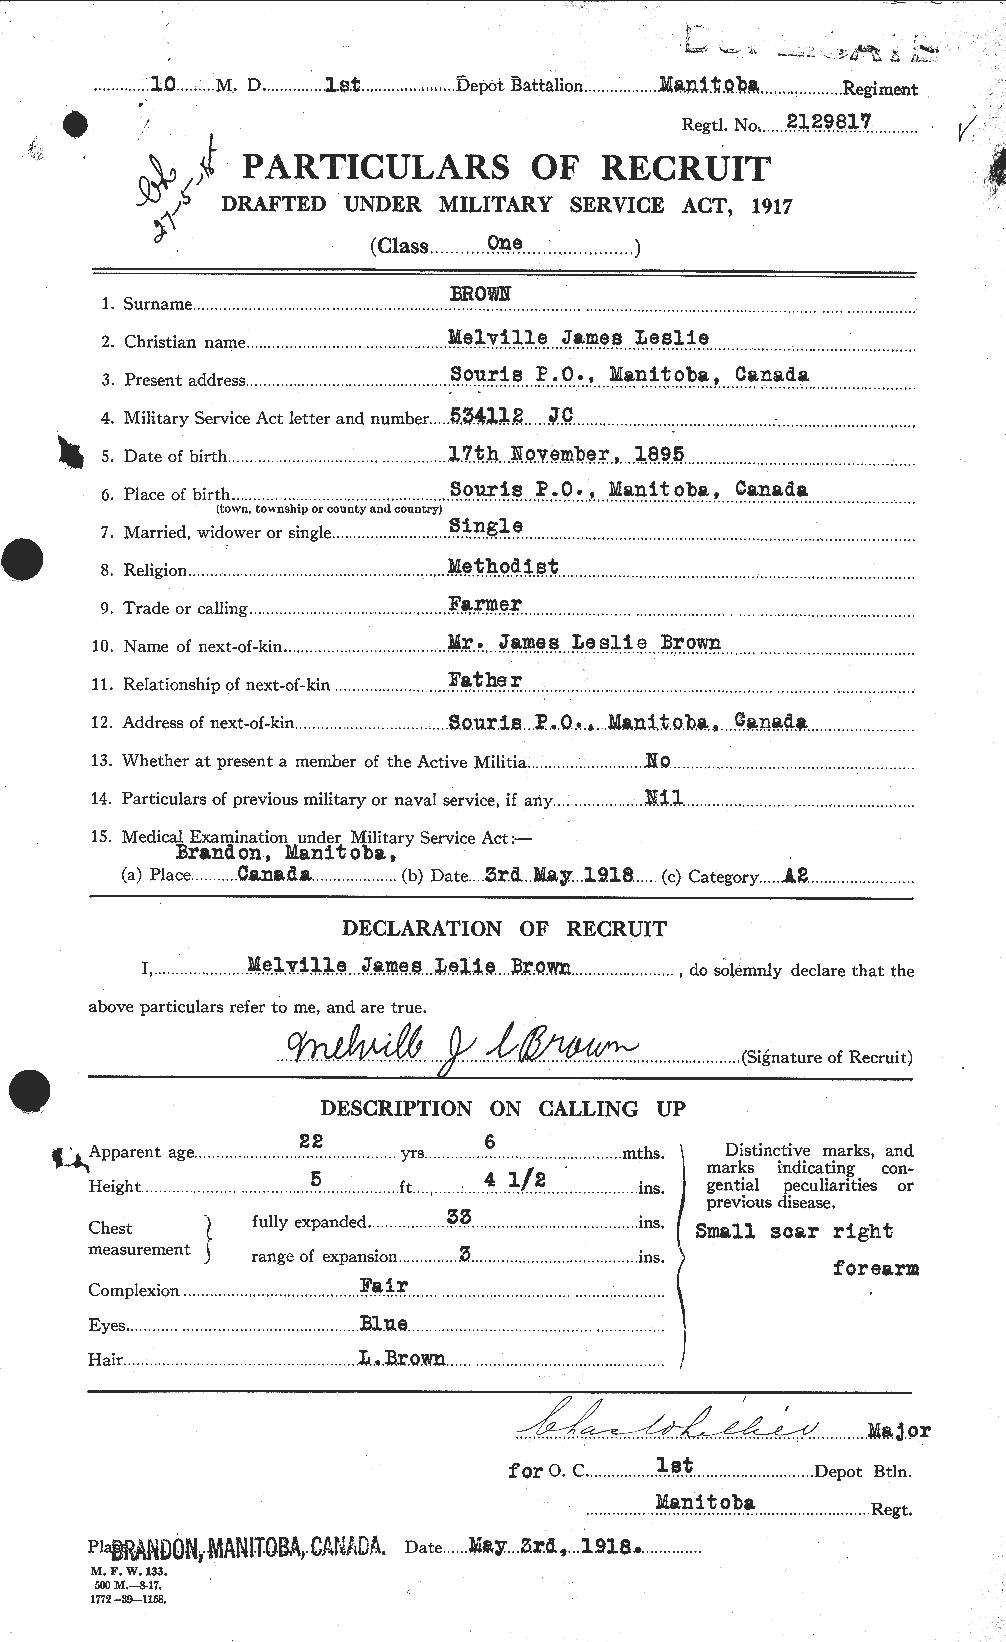 Dossiers du Personnel de la Première Guerre mondiale - CEC 267054a